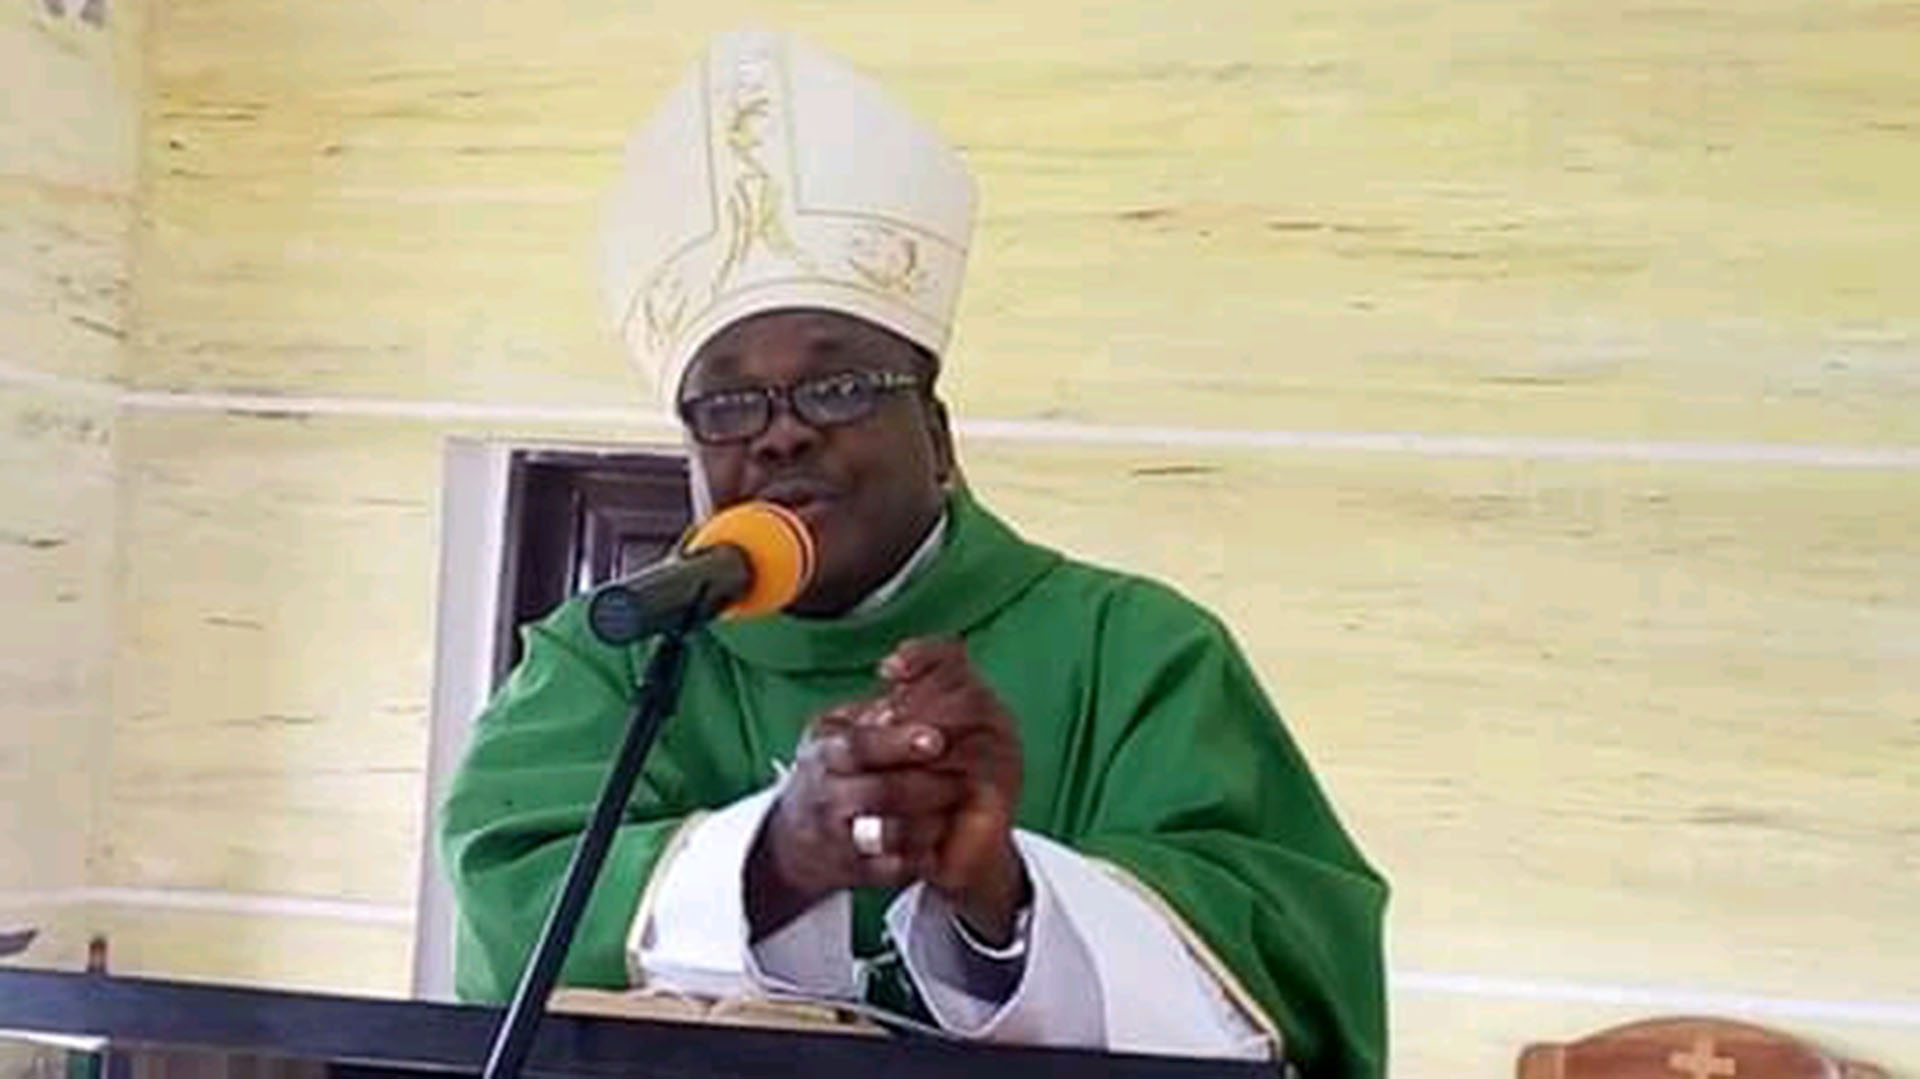 El obispo Emmanuel Badejo ofició la misa en los funerales de las víctimas de la masacre del domingo de Pentecostés, en Nigeria